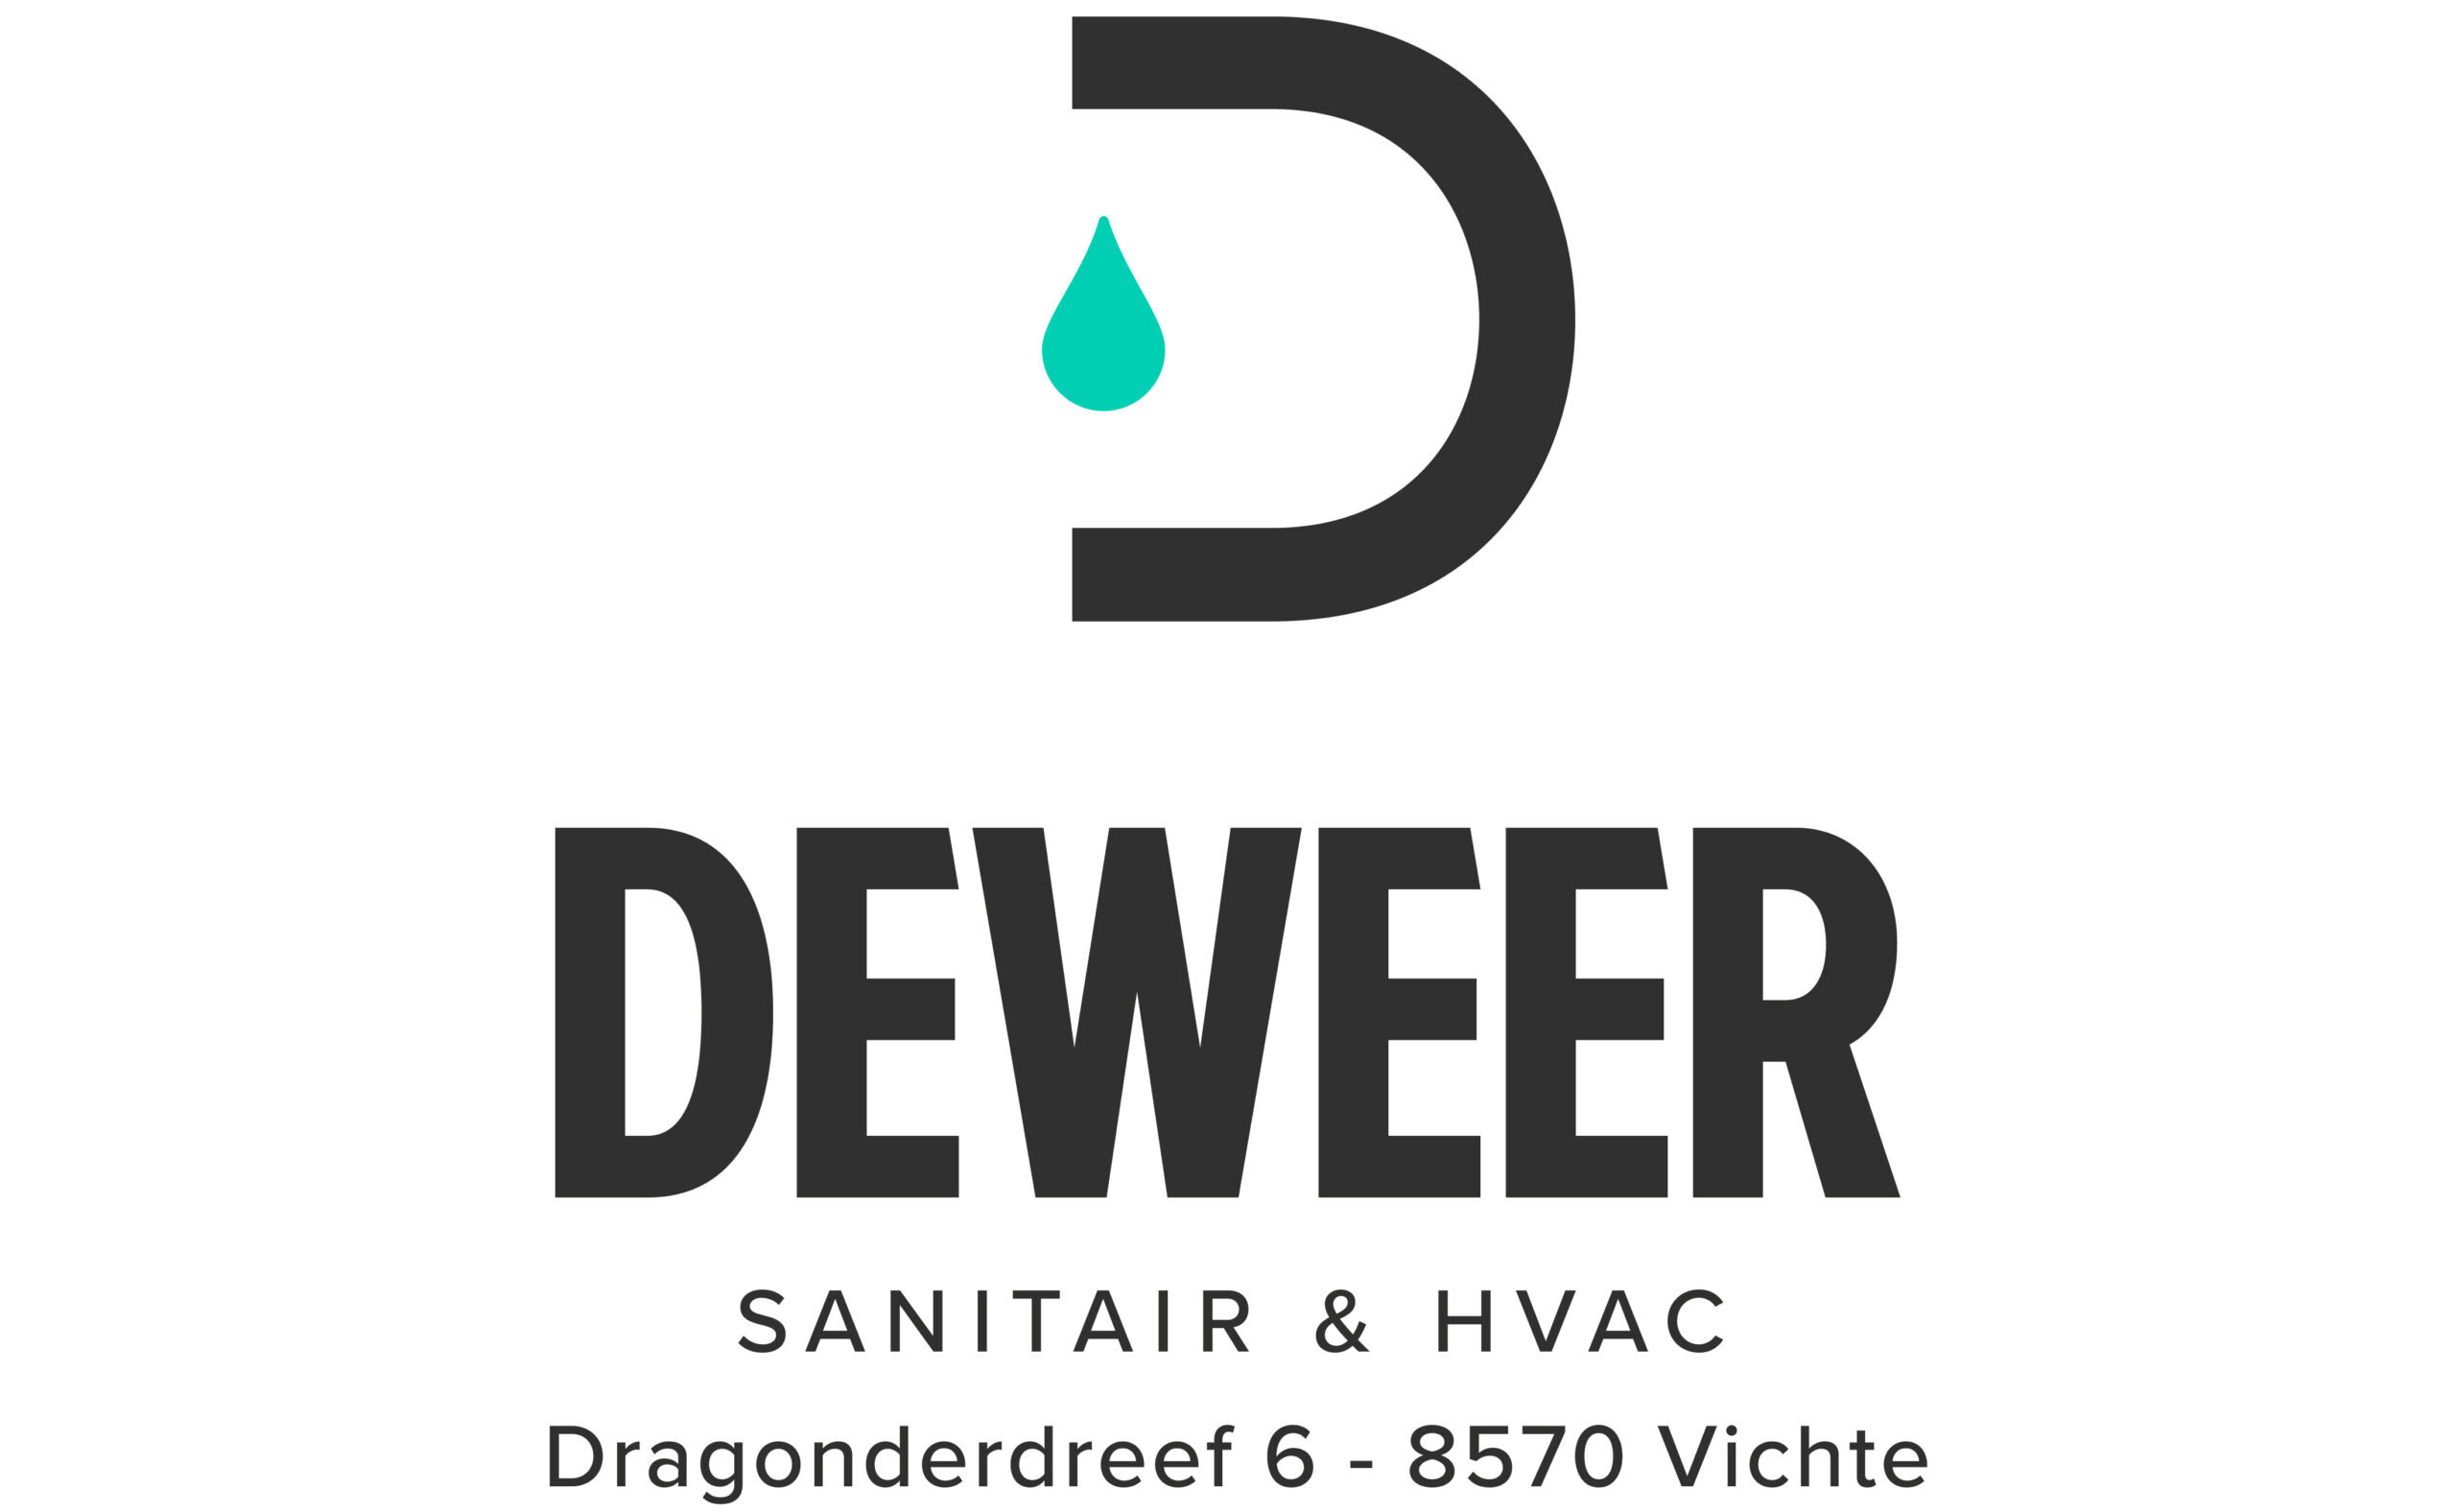 DEWEER sanitair & hvac